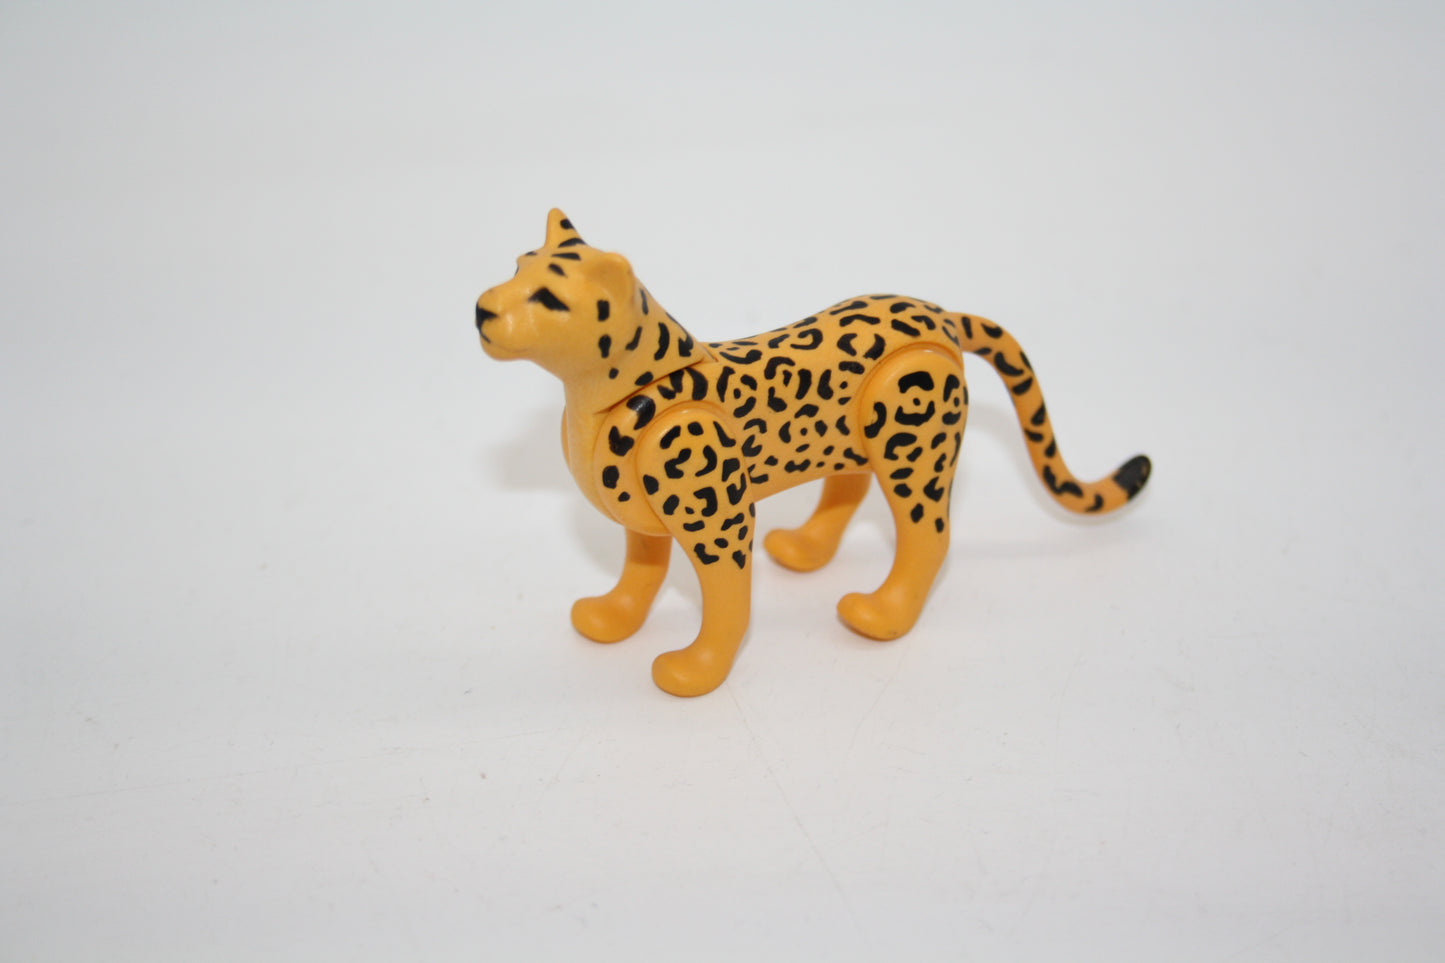 Playmobil® - Gepard/Leopard mit beweglichen Gelenken - Raubkatze - gelb